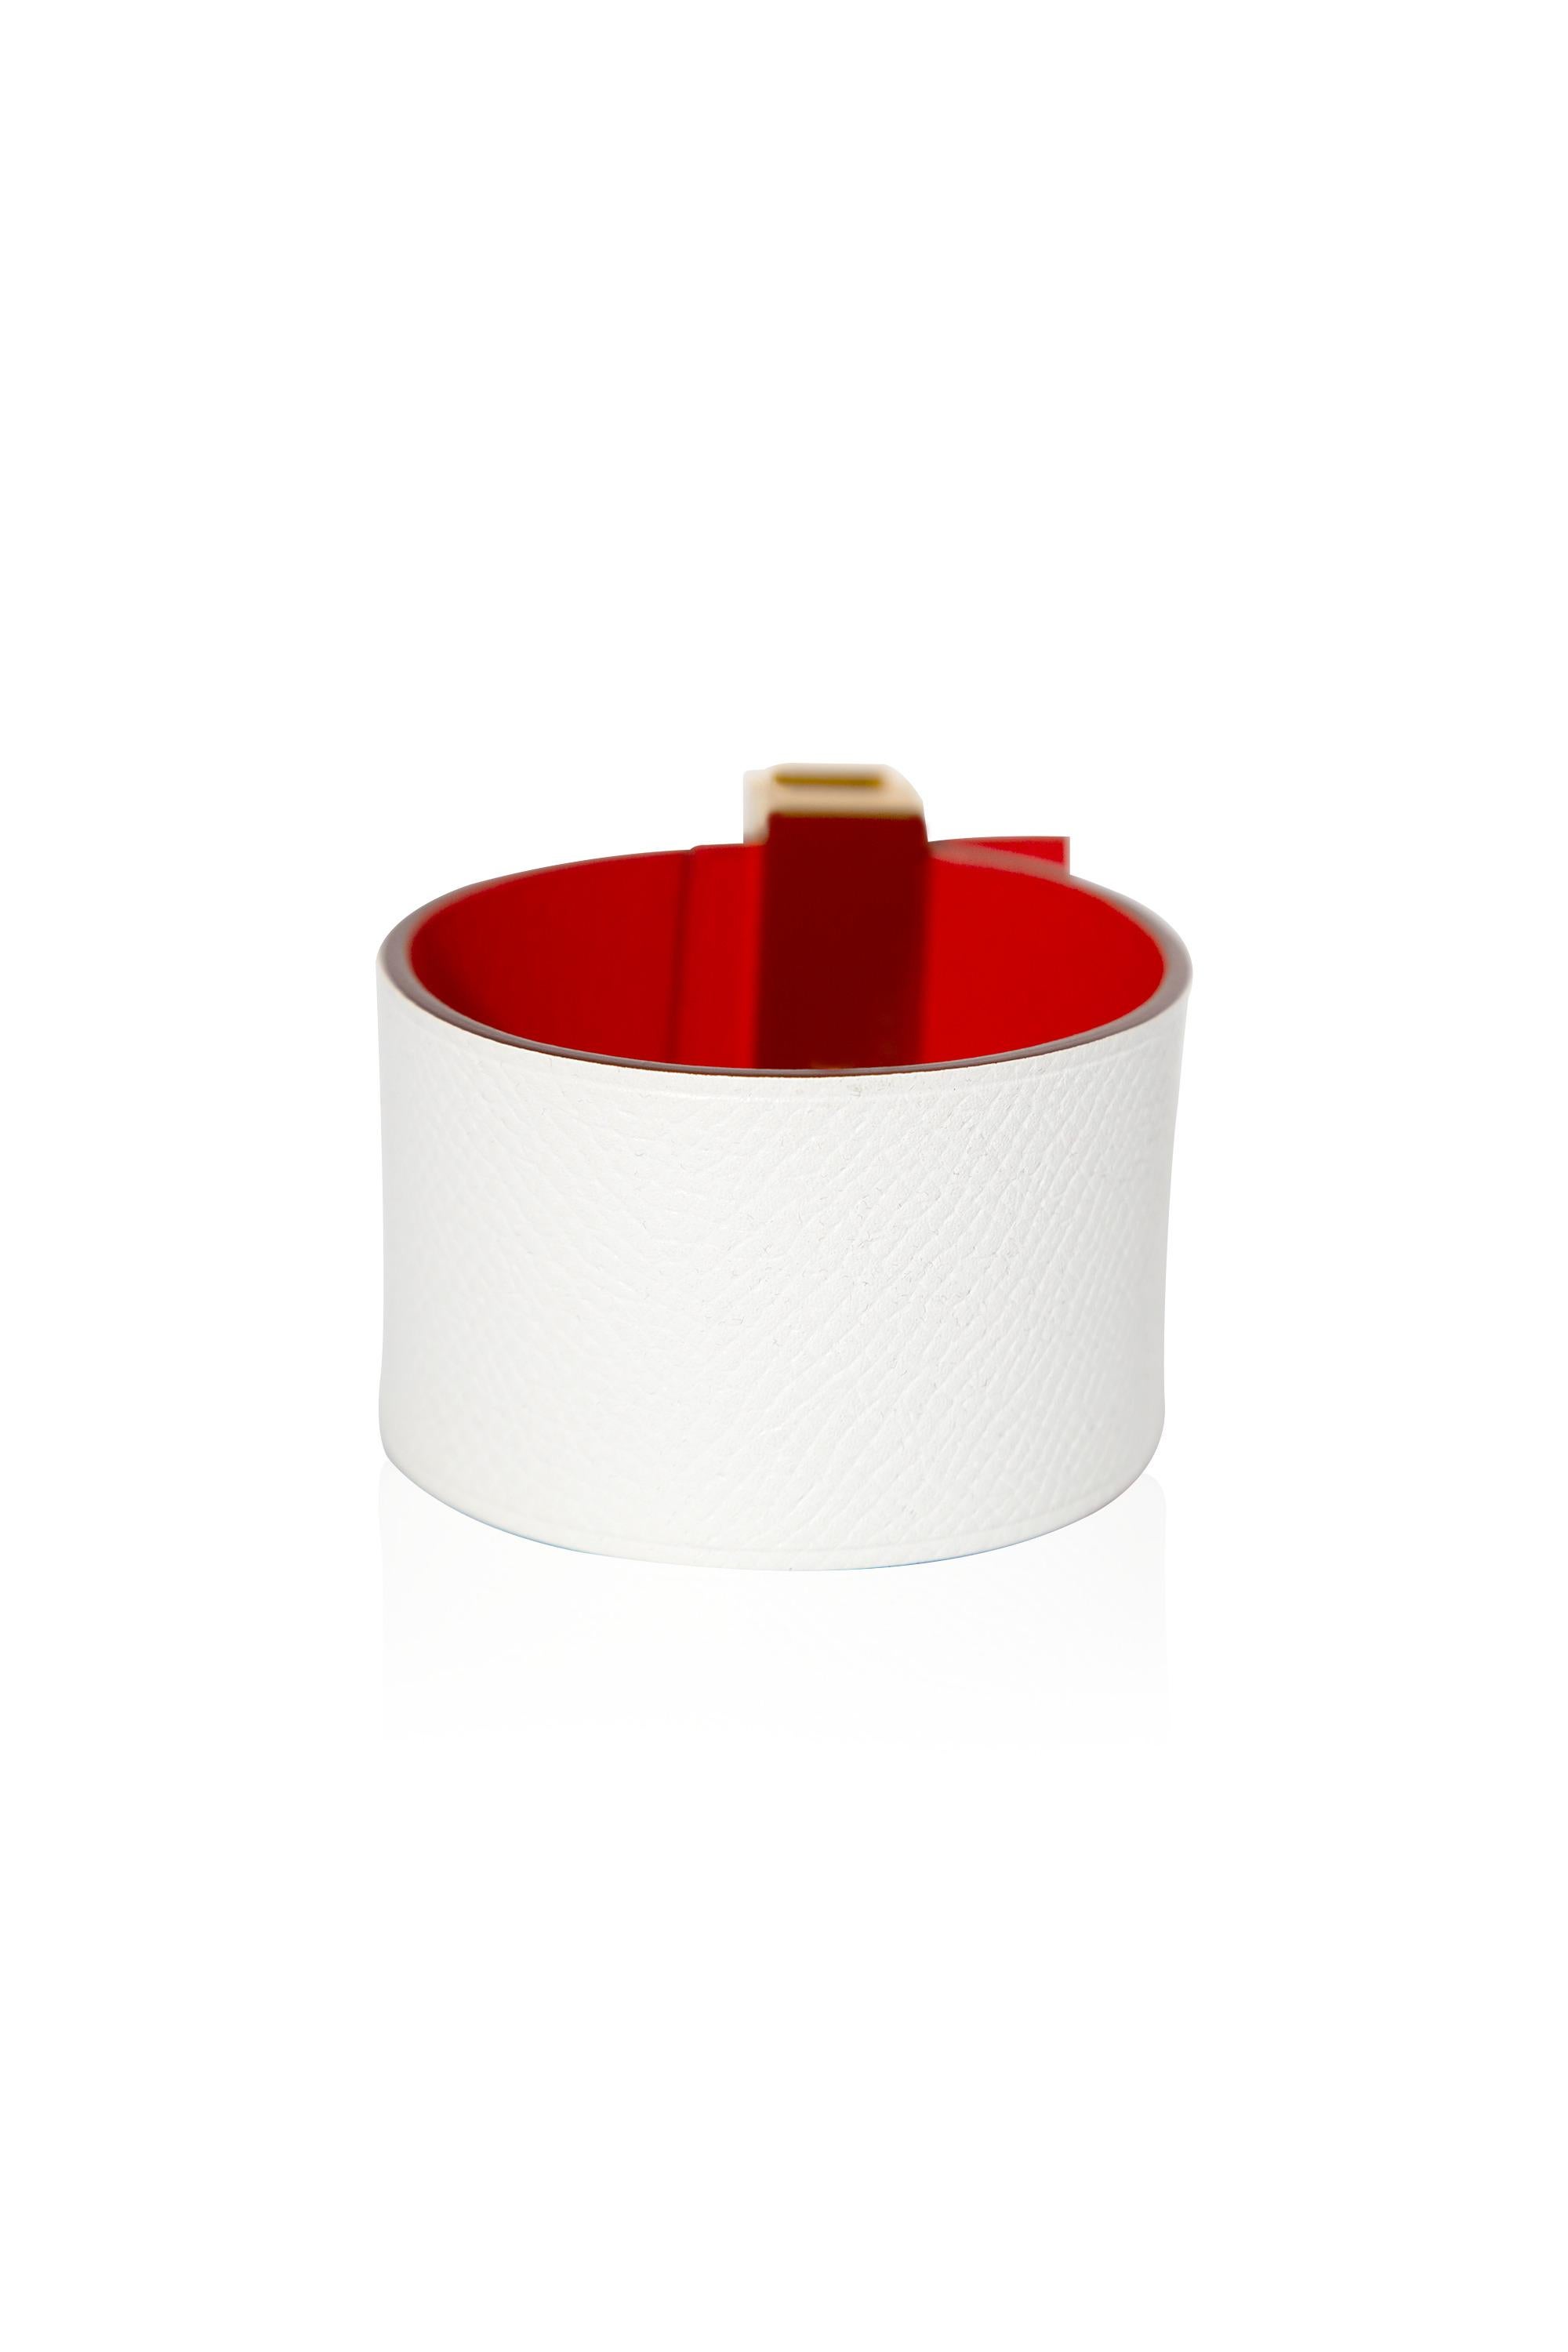 Whiting, le bracelet Capucine rouge et blanc d'Hermès. Récemment créée par Hermès, elle présente la particularité d'être réversible.

•Ajustez facilement la coupe en réglant le fermoir.
•Il est orné d'un anneau unique et d'une quincaillerie plaquée